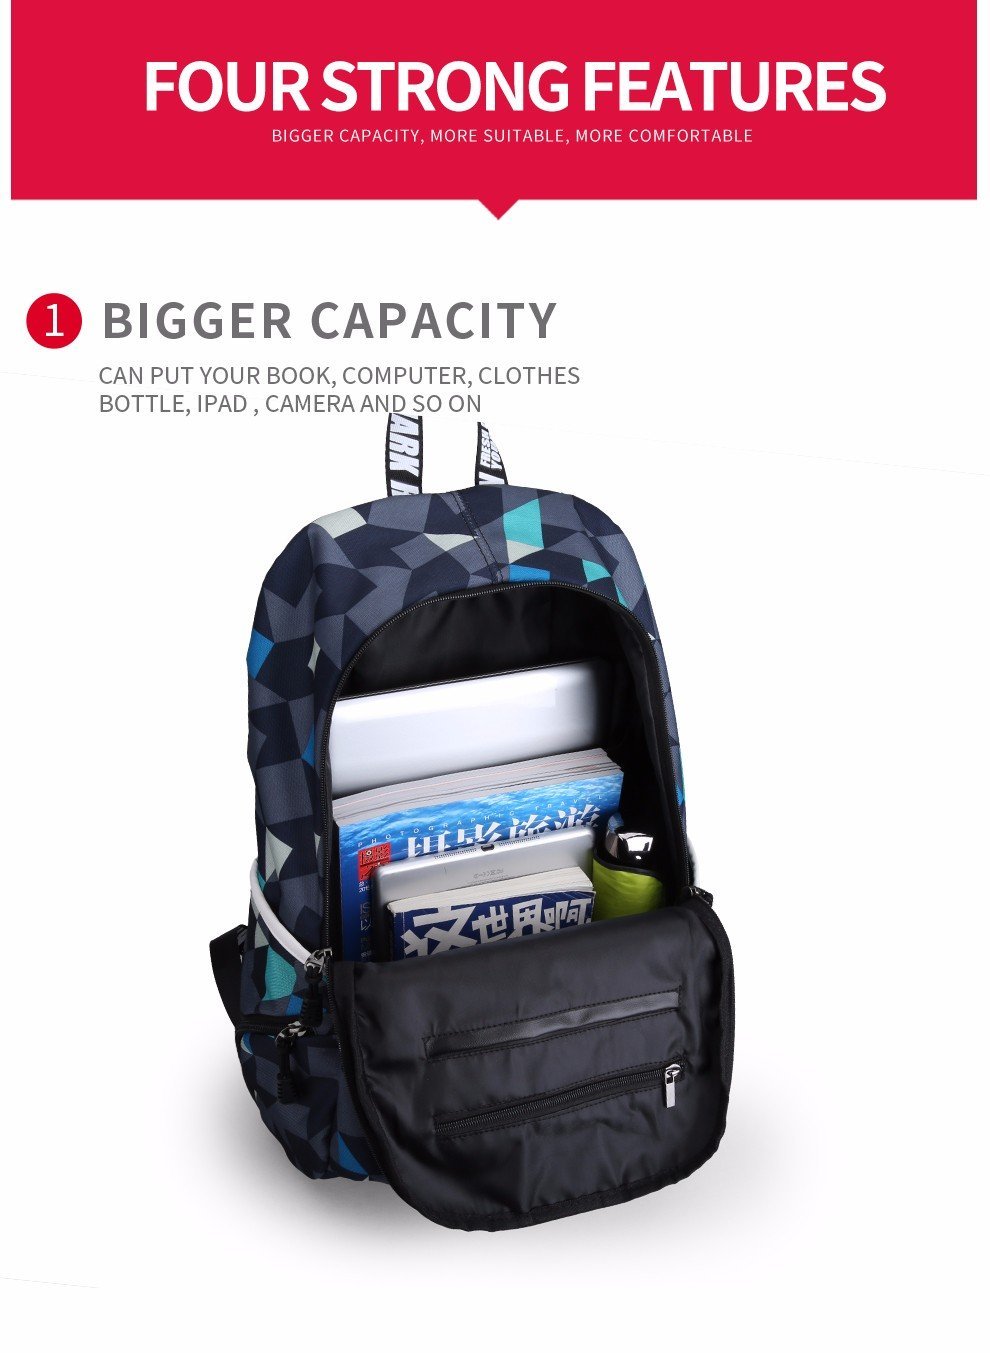 Waterproof Student Backpacks